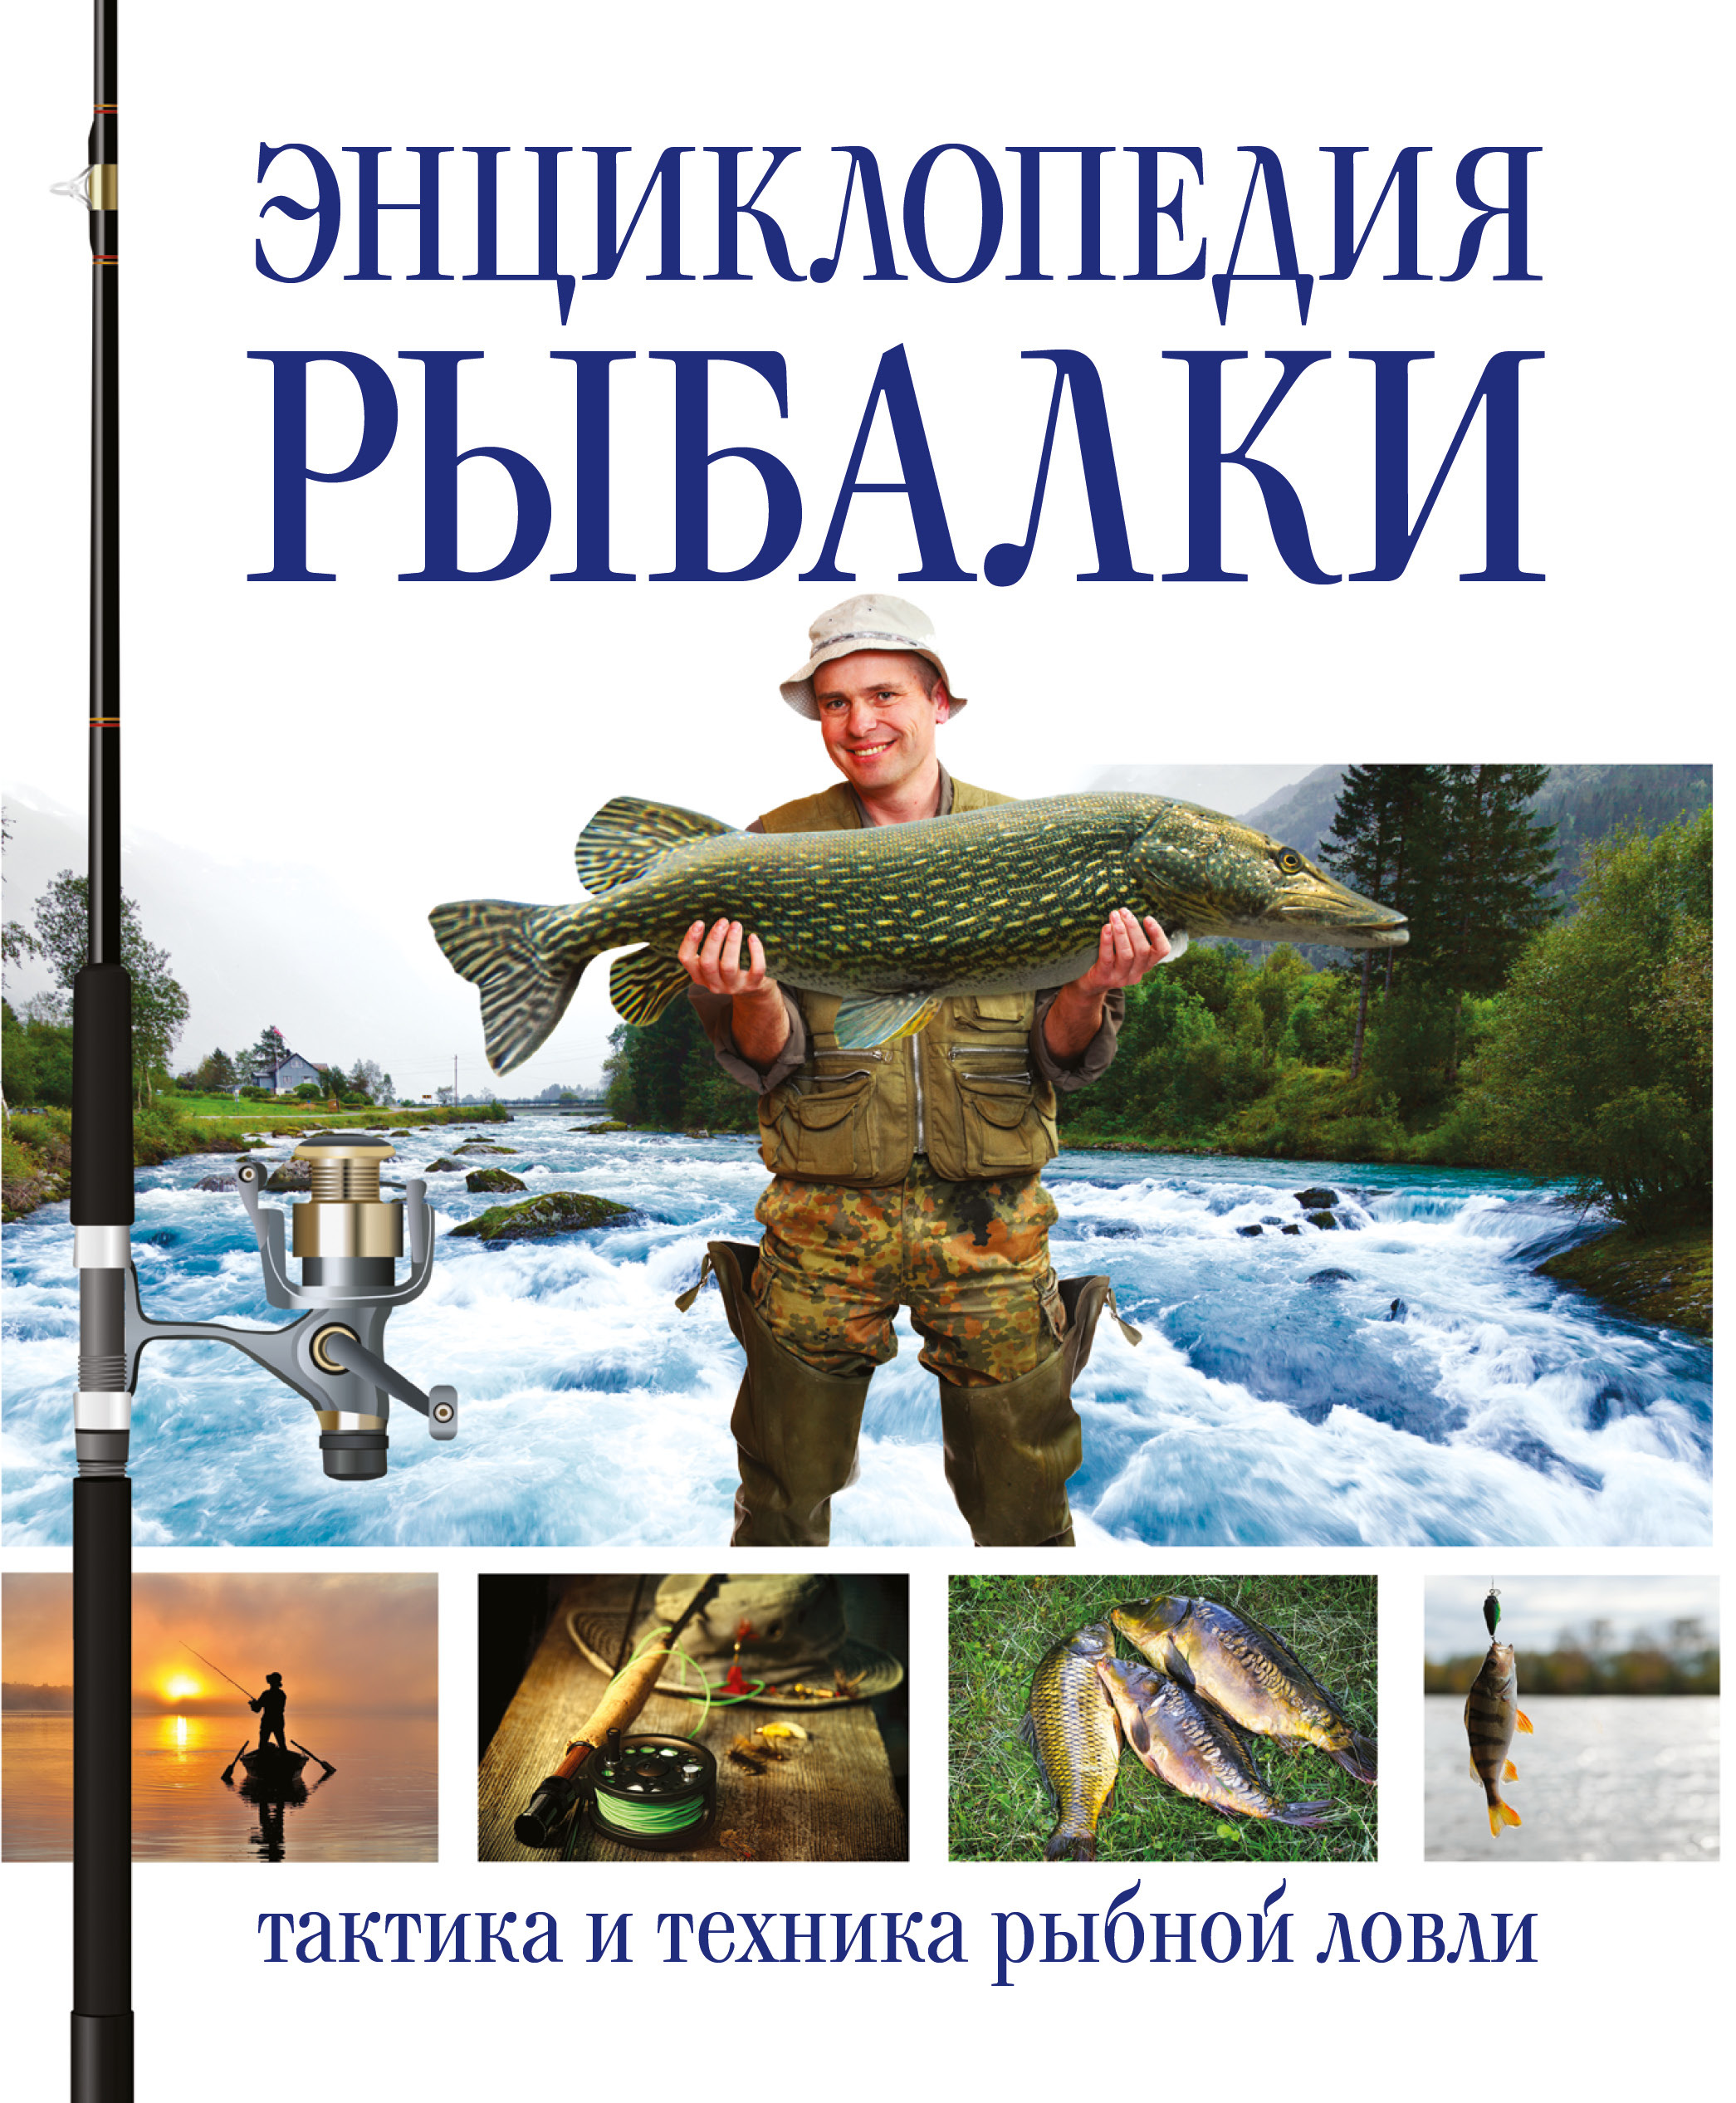 Рыболовные книги